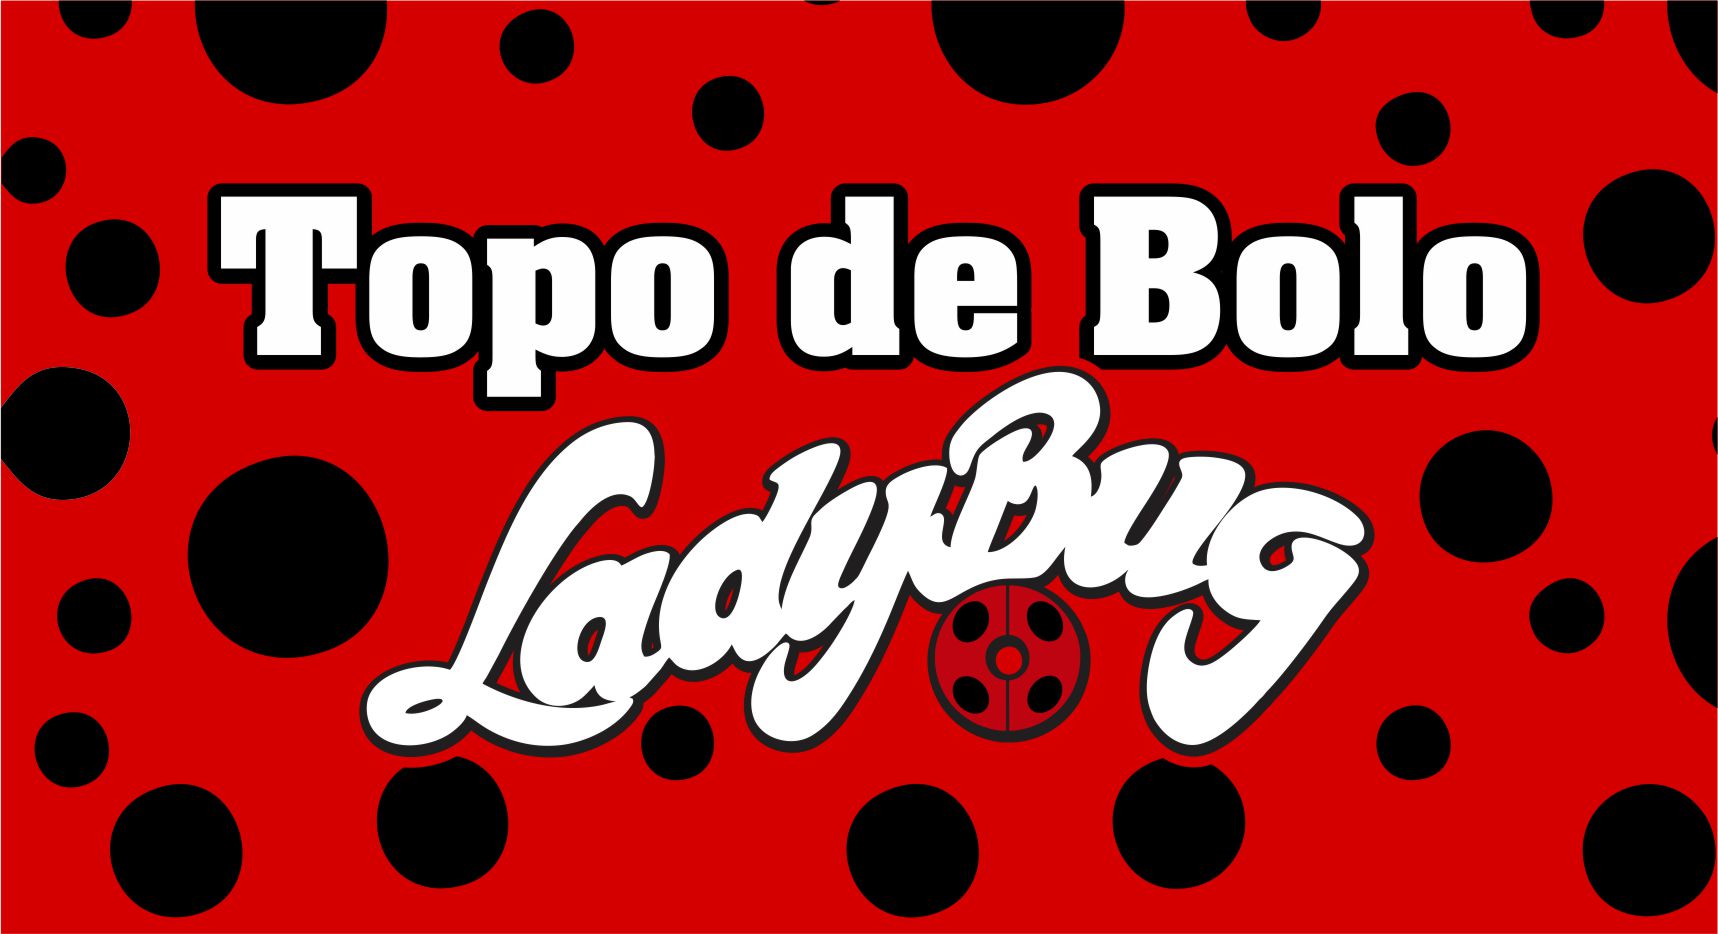 Topo de bolo da lady bug feito - Lu & Lu Personalizados